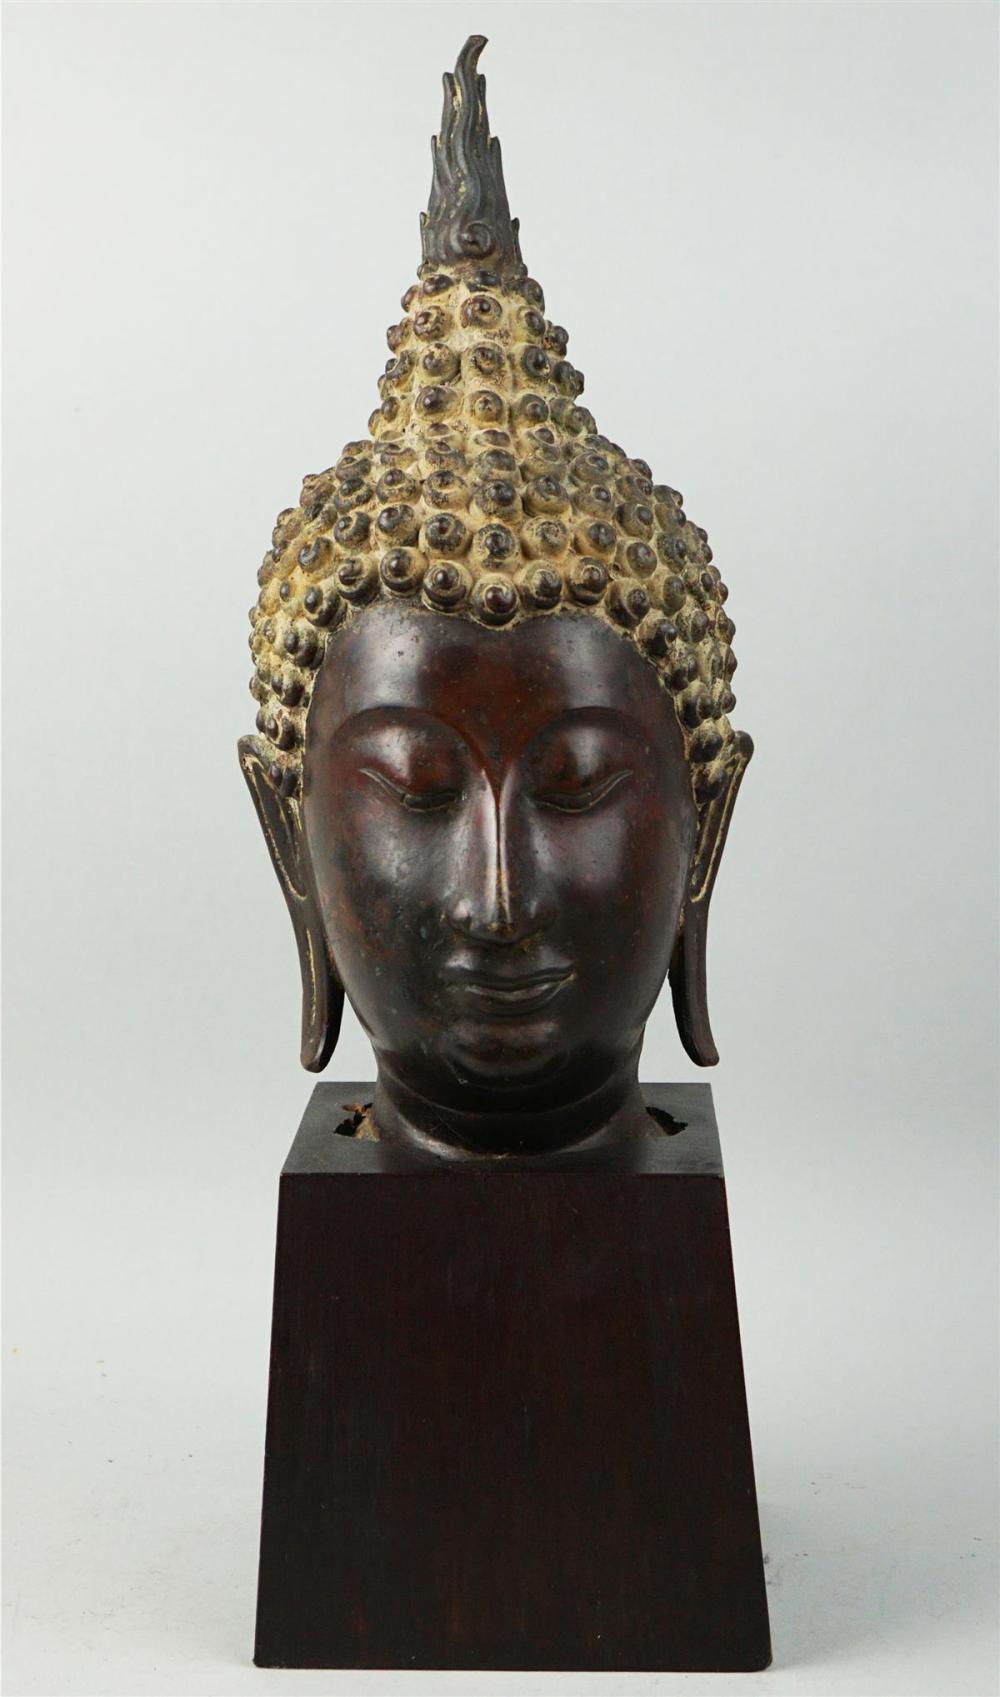 THAI BRONZE HEAD OF THE BUDDHATHAI 33bd68